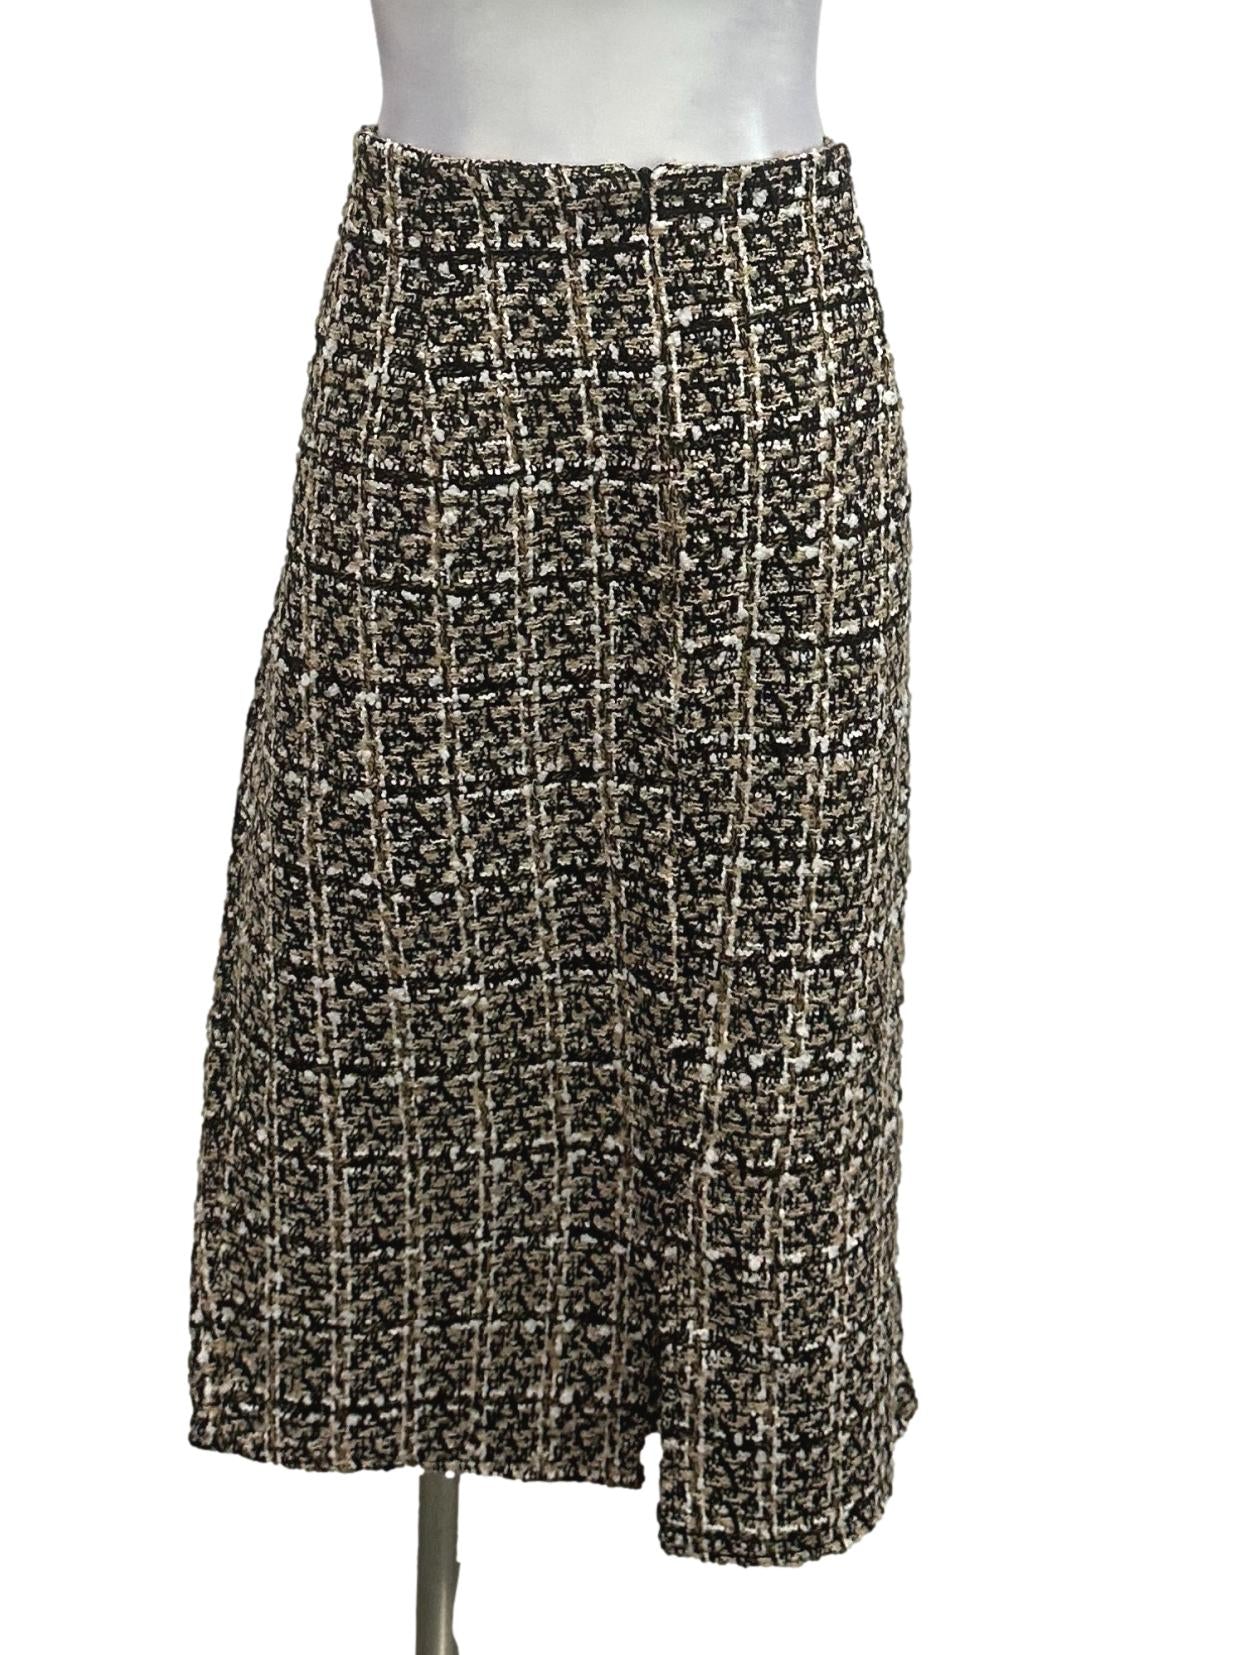 Black Tweed Skirt